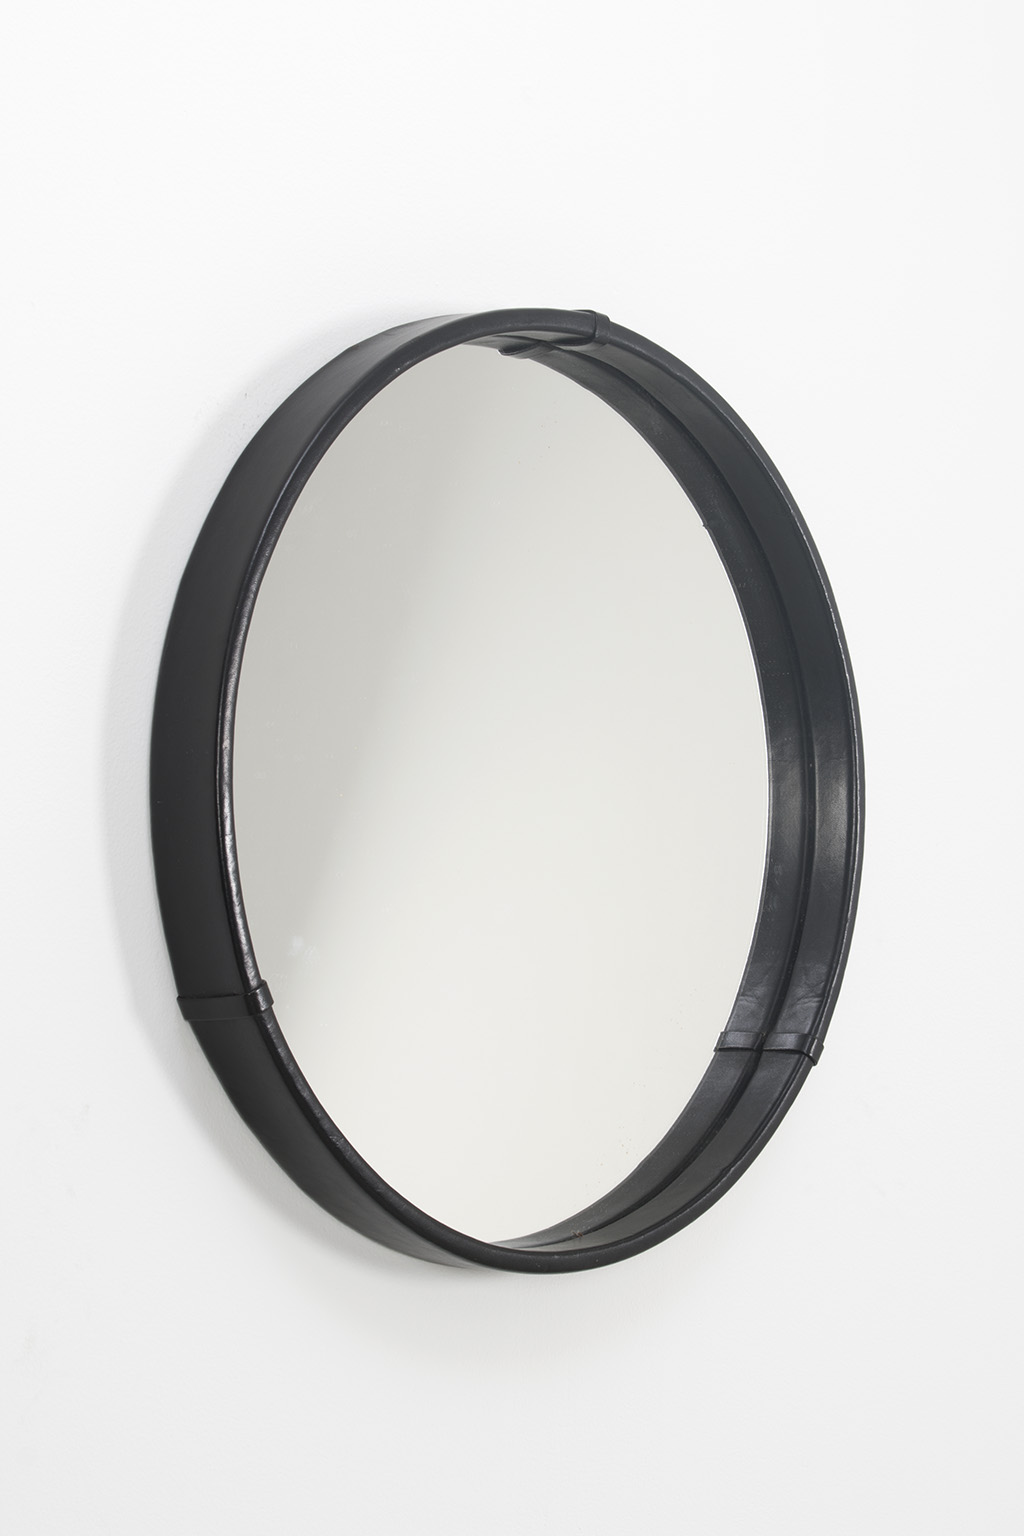 Middel Een evenement definitief Deense spiegel met zwart leer - Decennia Design